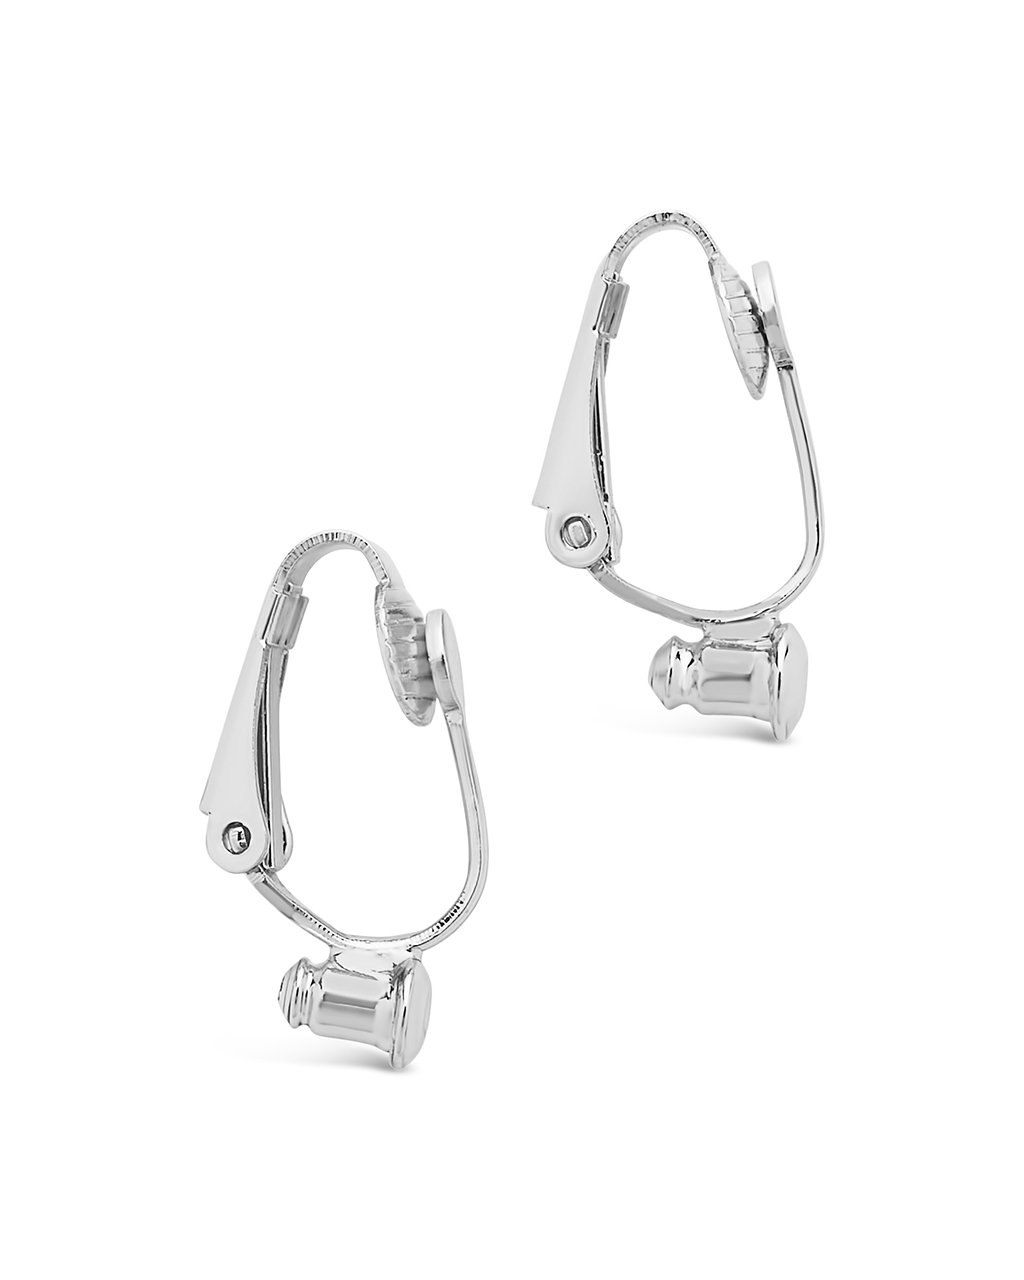 Clip on Earrings/ Earring Clip/ Ear Clip Earrings/ Findings 